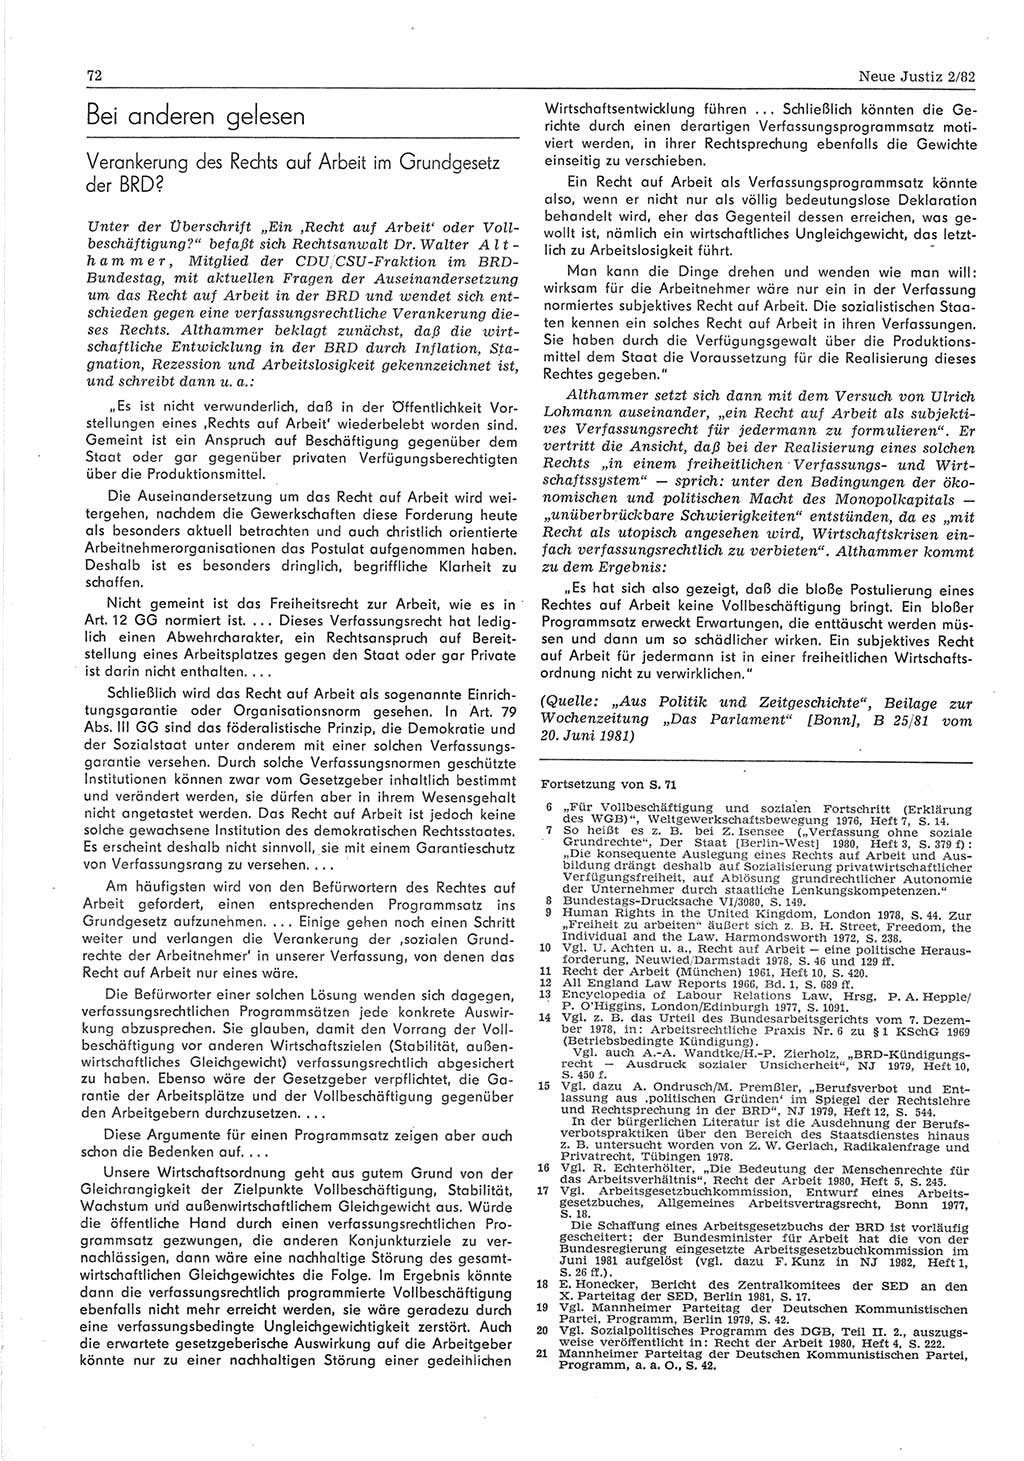 Neue Justiz (NJ), Zeitschrift für sozialistisches Recht und Gesetzlichkeit [Deutsche Demokratische Republik (DDR)], 36. Jahrgang 1982, Seite 72 (NJ DDR 1982, S. 72)